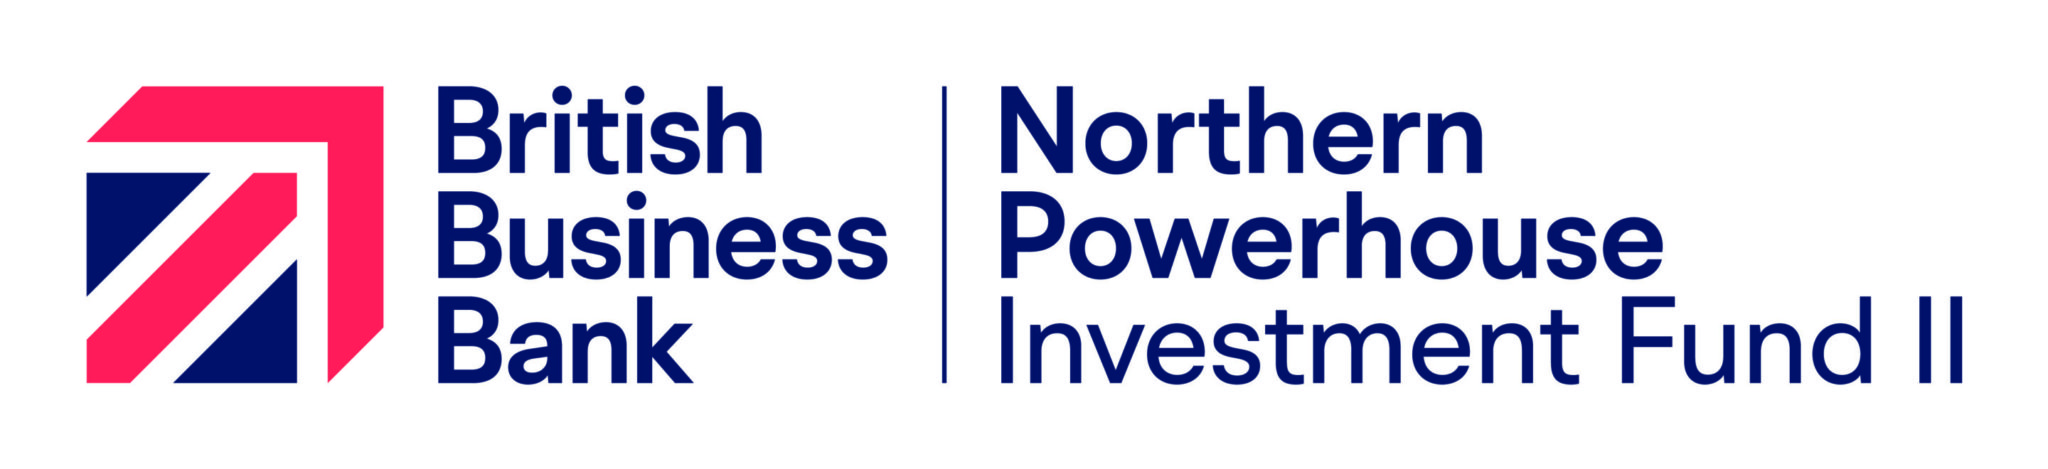 Northern Powerhouse Investment Fund II (NPIF II)